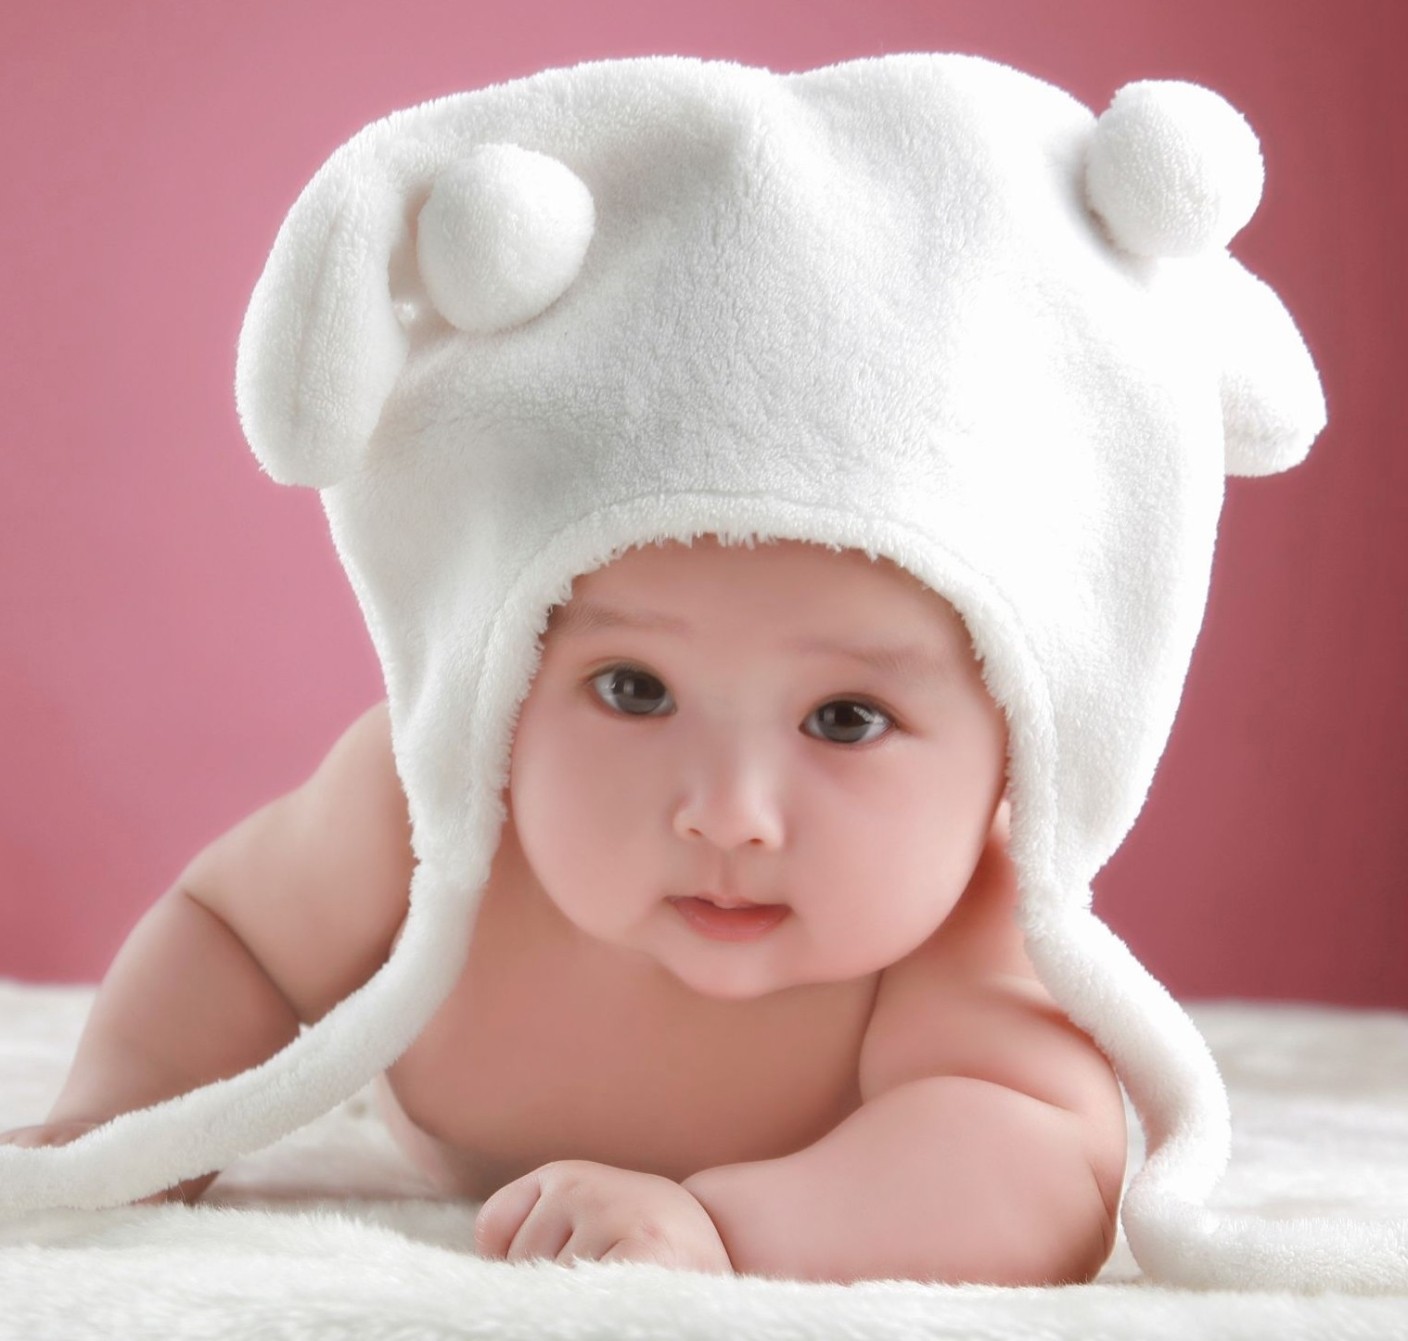 Những bức ảnh em bé sơ sinh đẹp luôn có sức cuốn hút đặc biệt và mang đến cảm giác yên bình cho người xem.